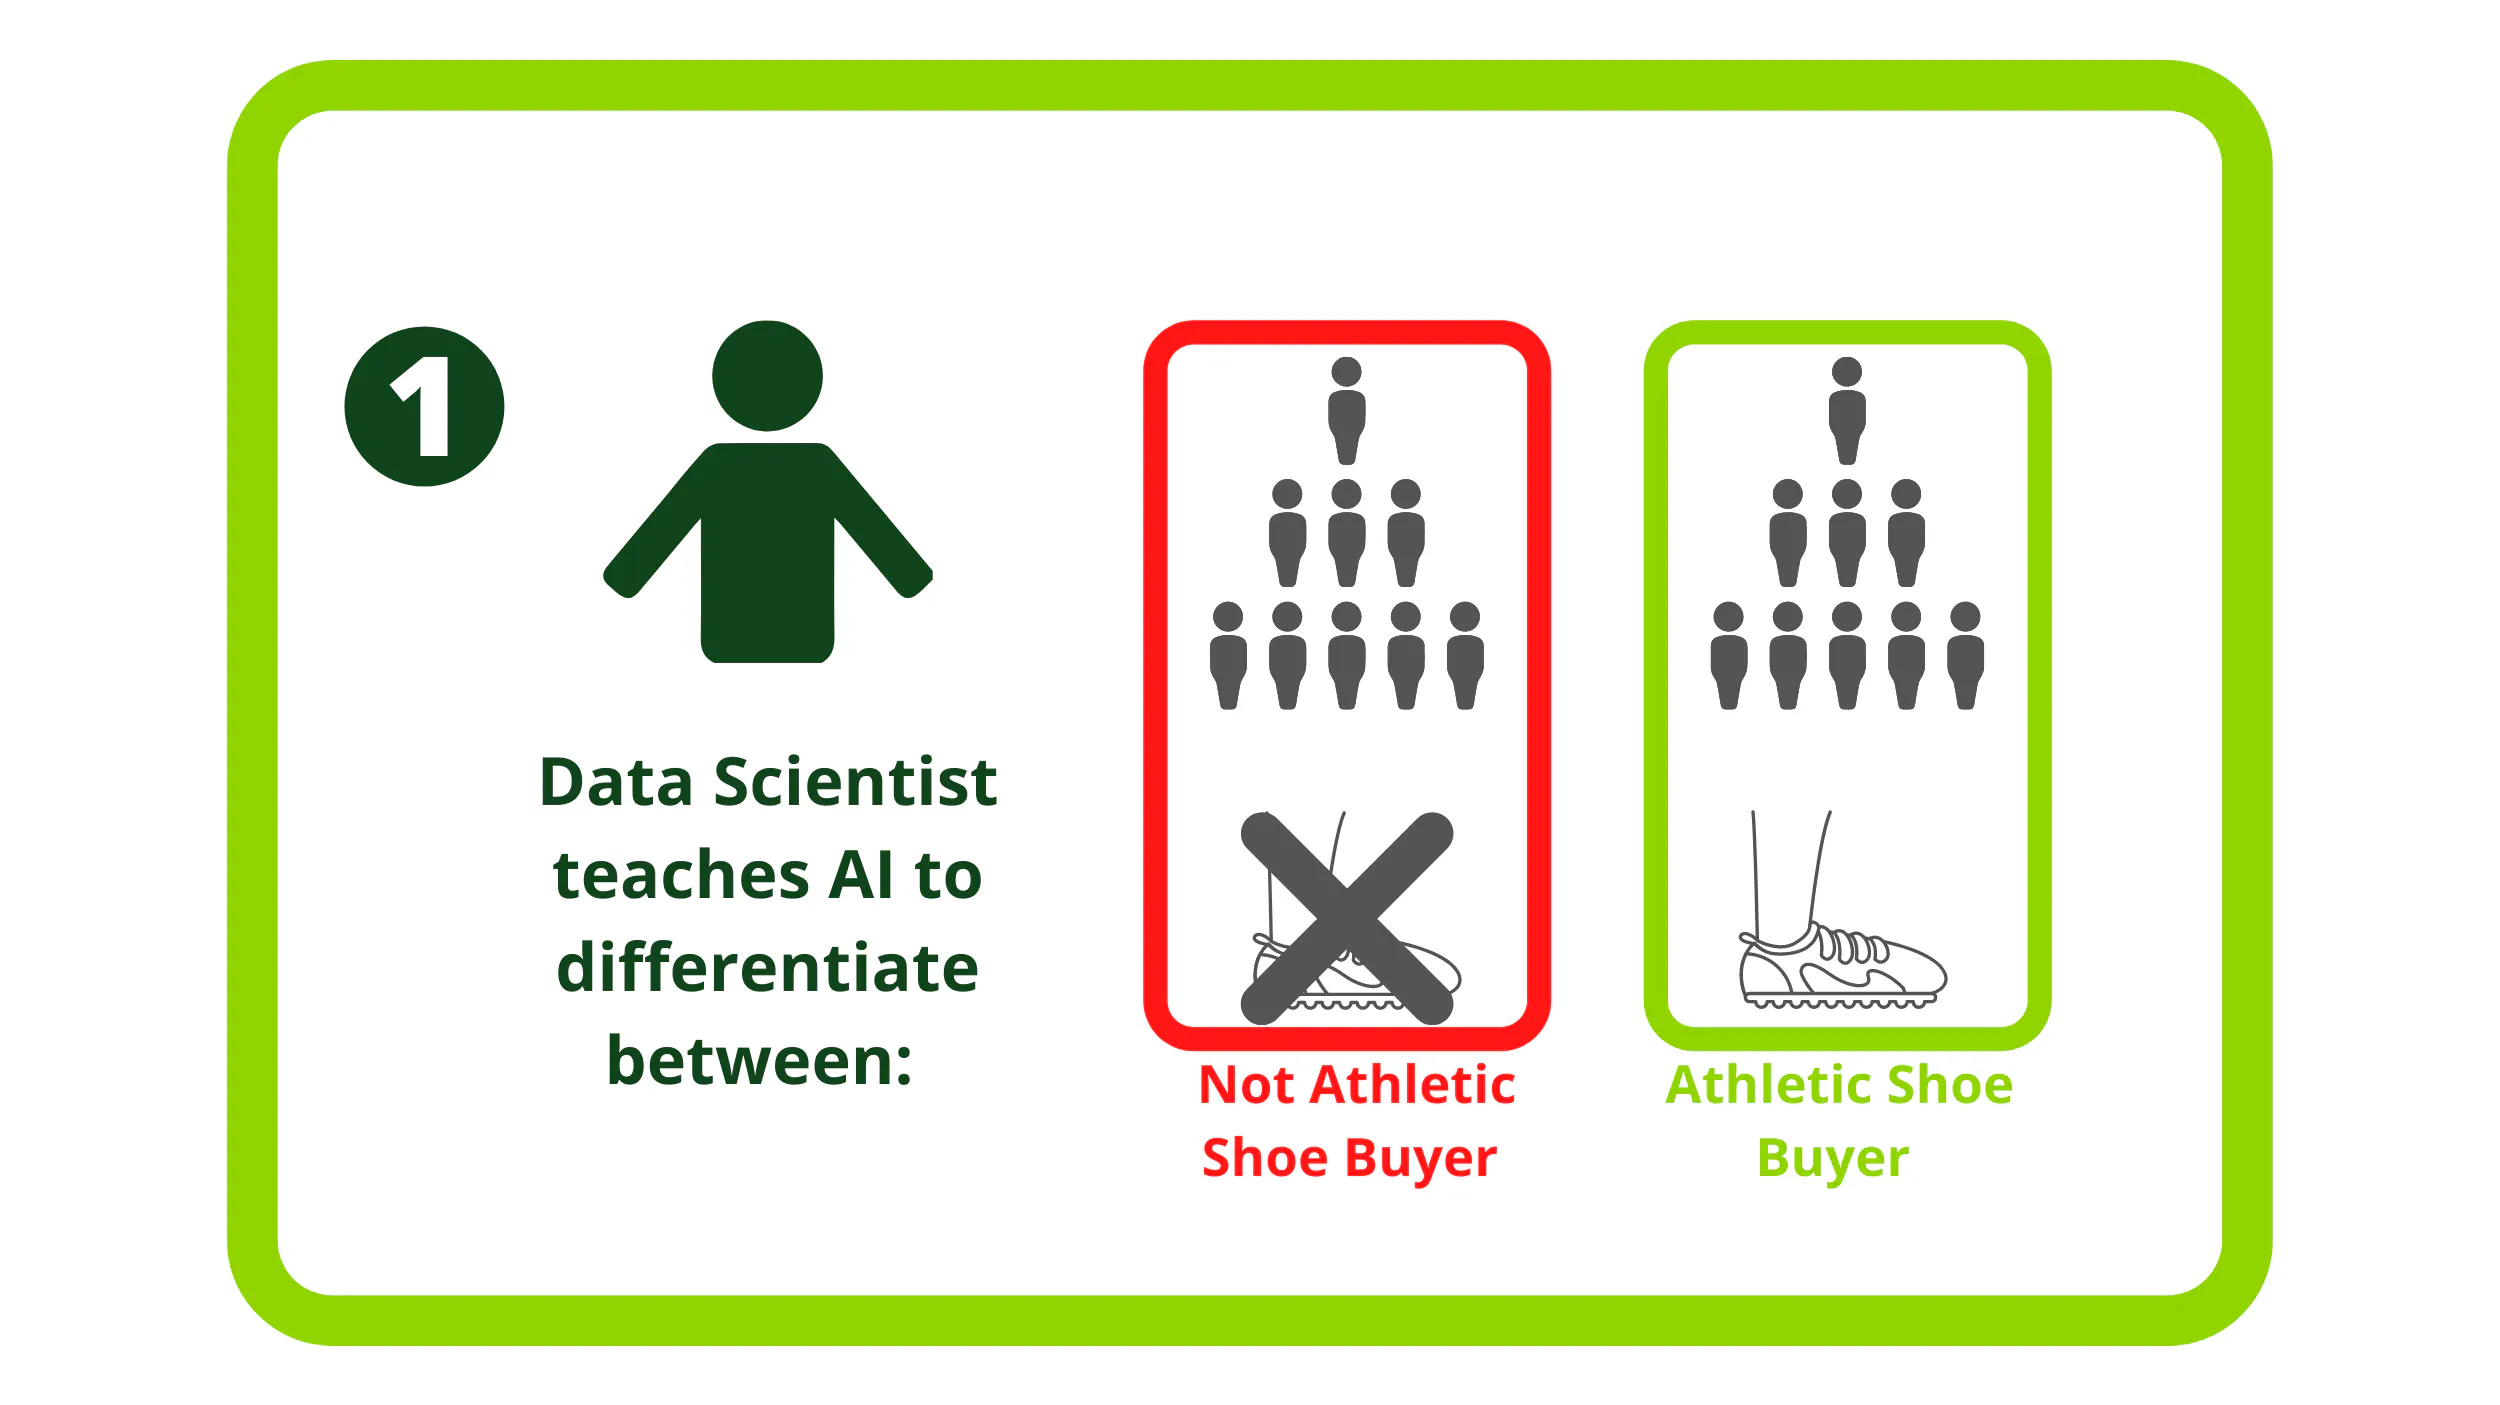 Un spécialiste des données apprend à l'IA à faire la différence entre un acheteur de chaussures de sport et un autre qui ne l'est pas.